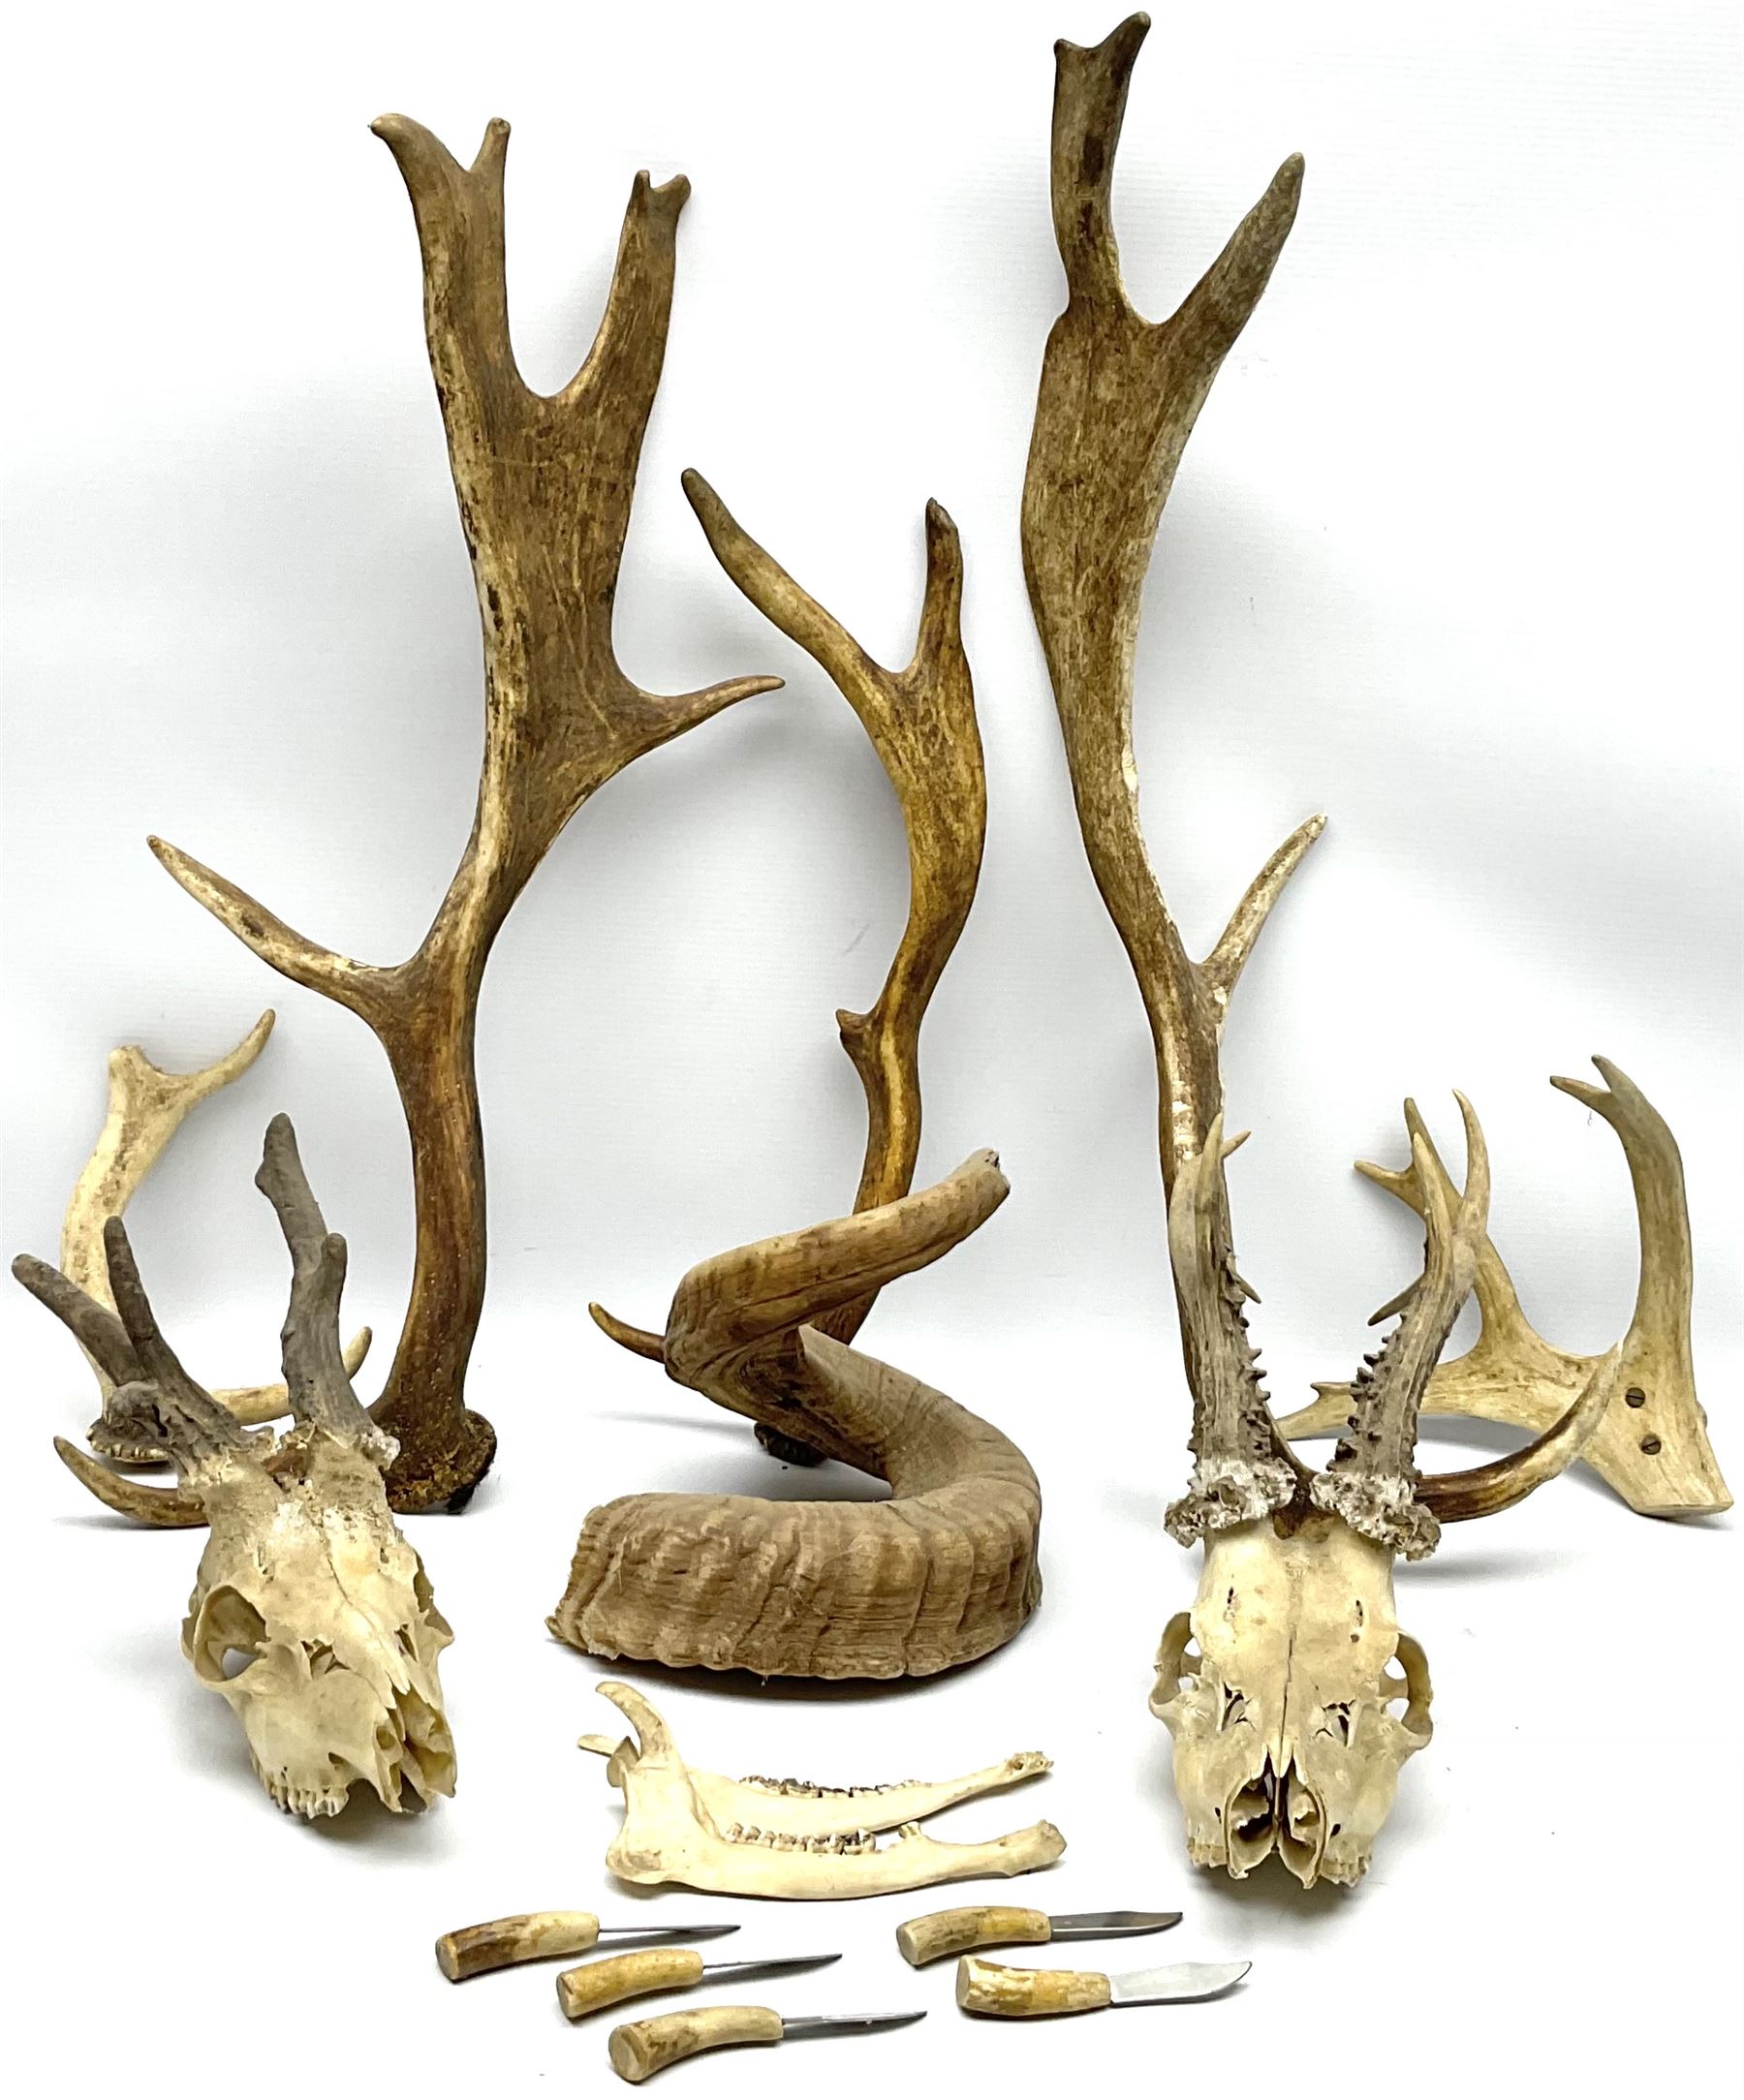 Antlers/Horns: two Roebuck Antlers with skull (Capreolus capreolus)